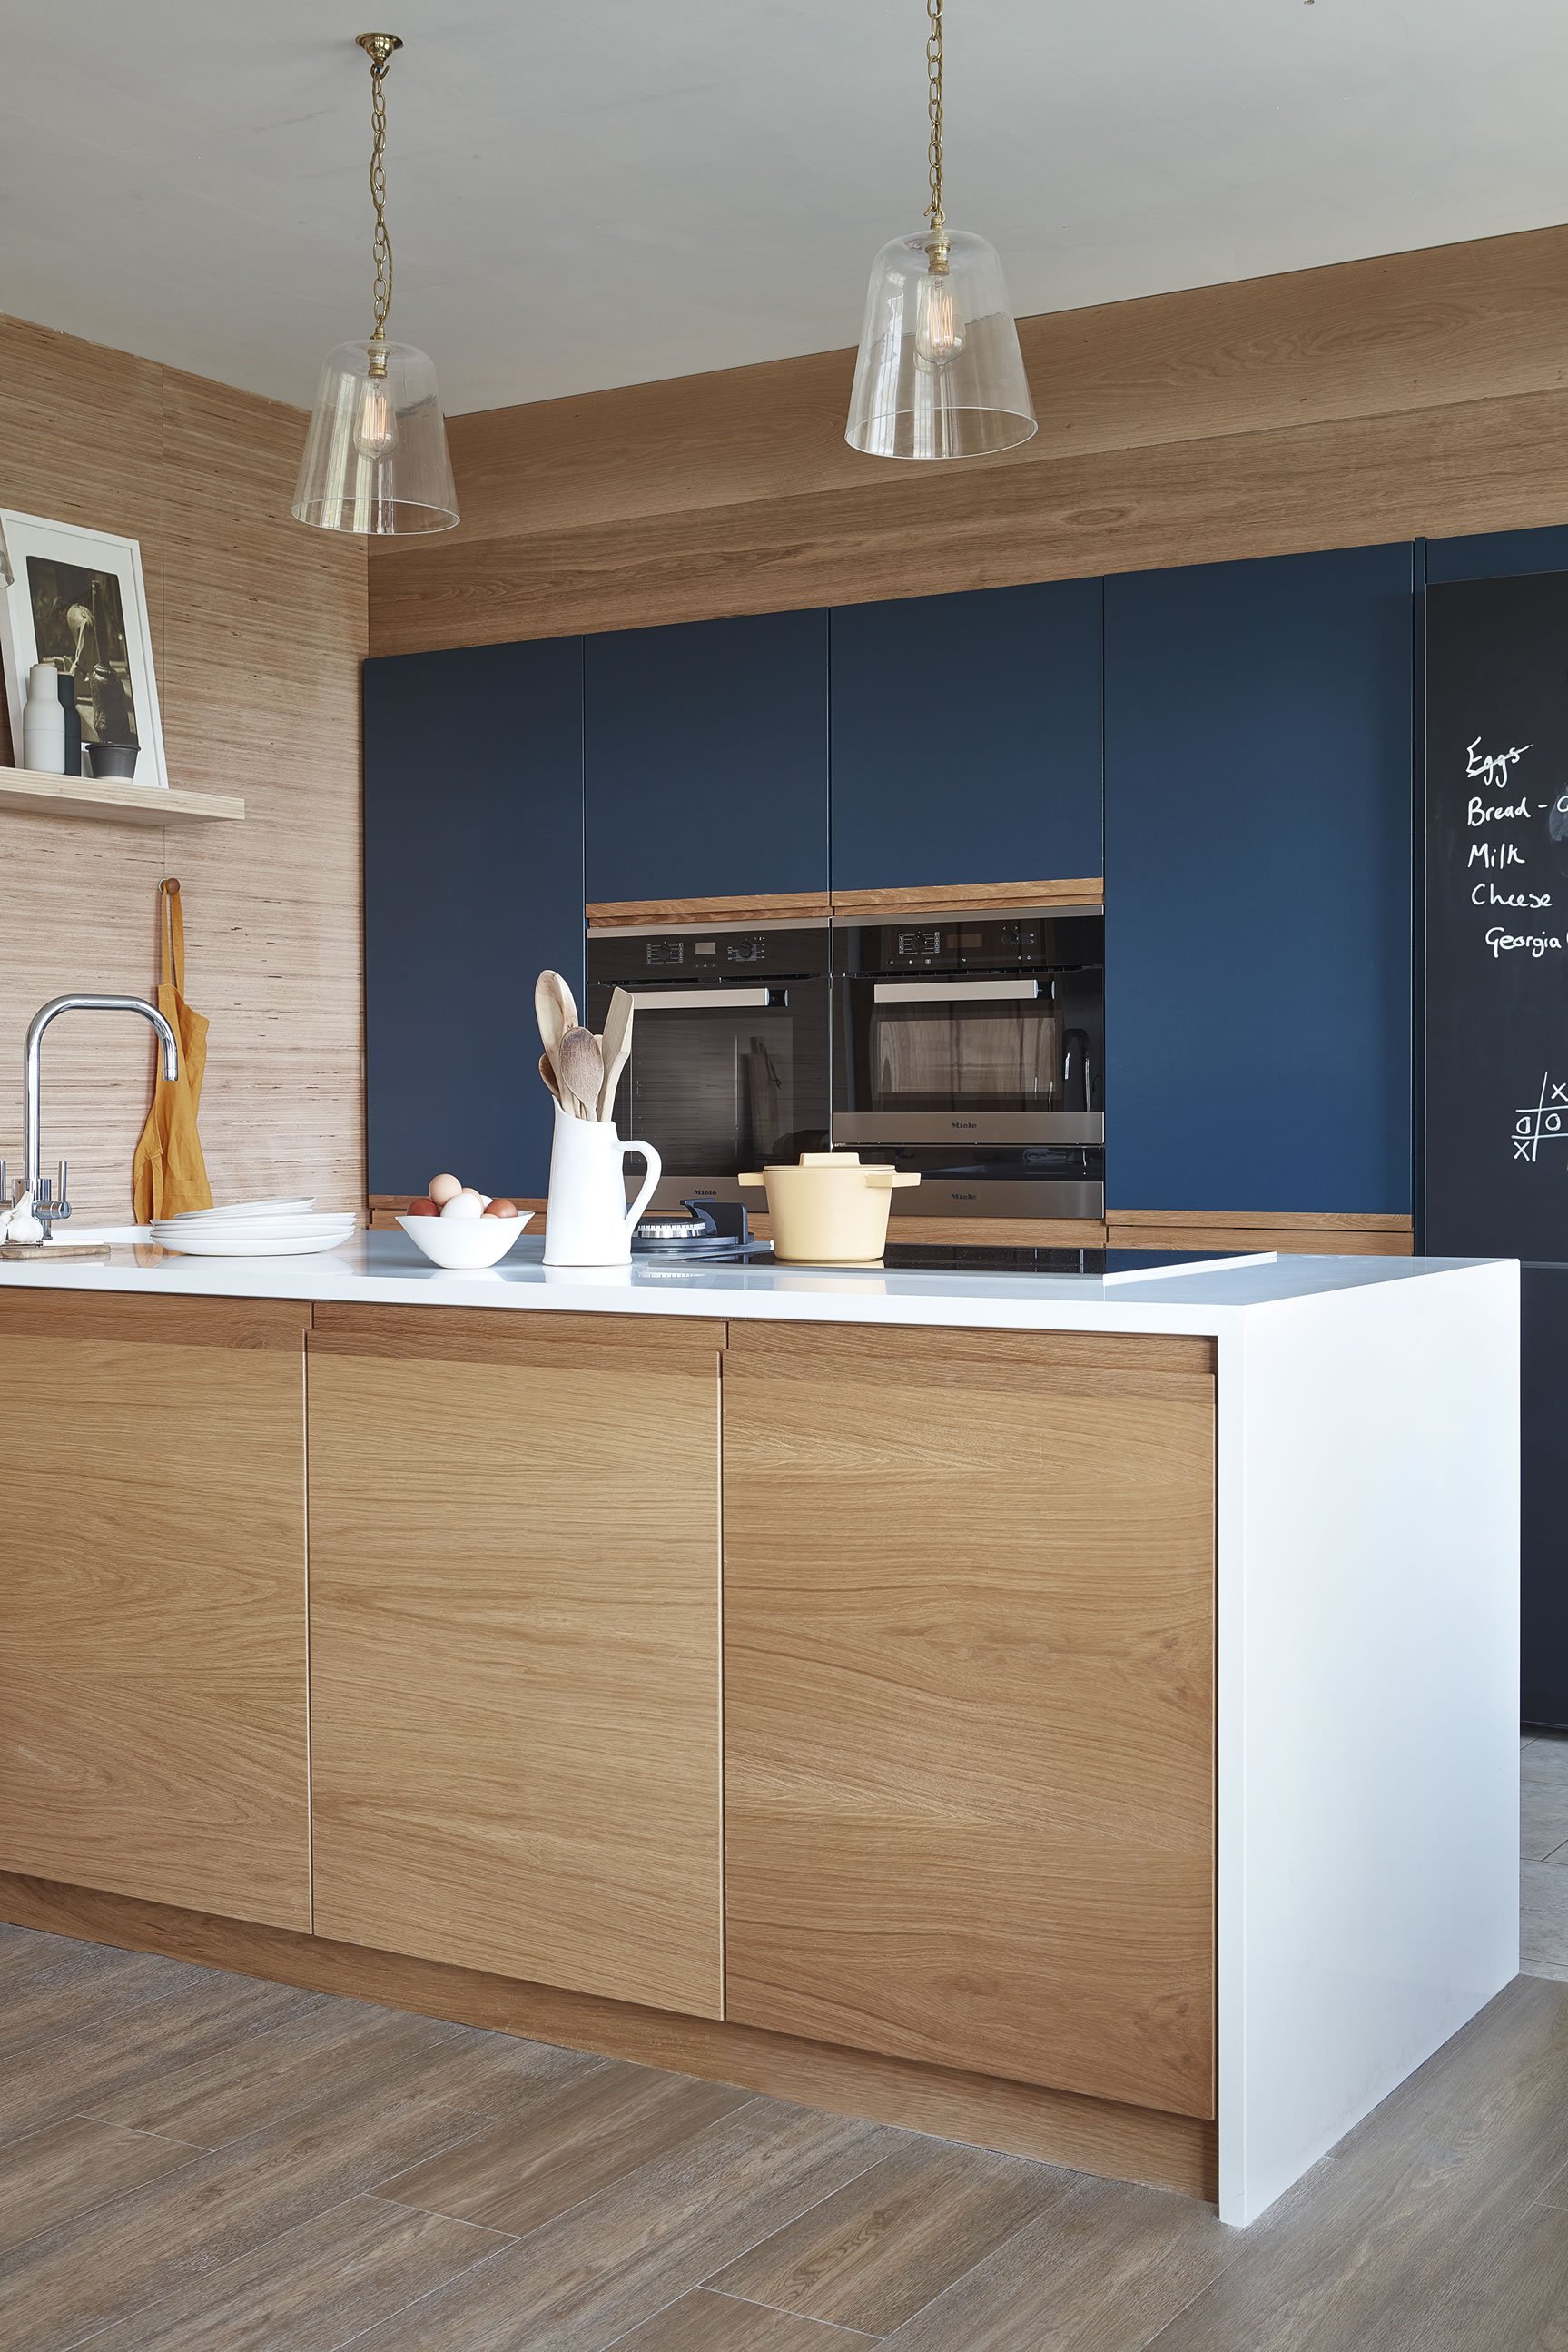 Trang trí nhà bếp bằng giấy dán tường dễ dàng, đơn giản và tiết kiệm rõ ràng so với dùng gạch ốp - Ảnh 14.